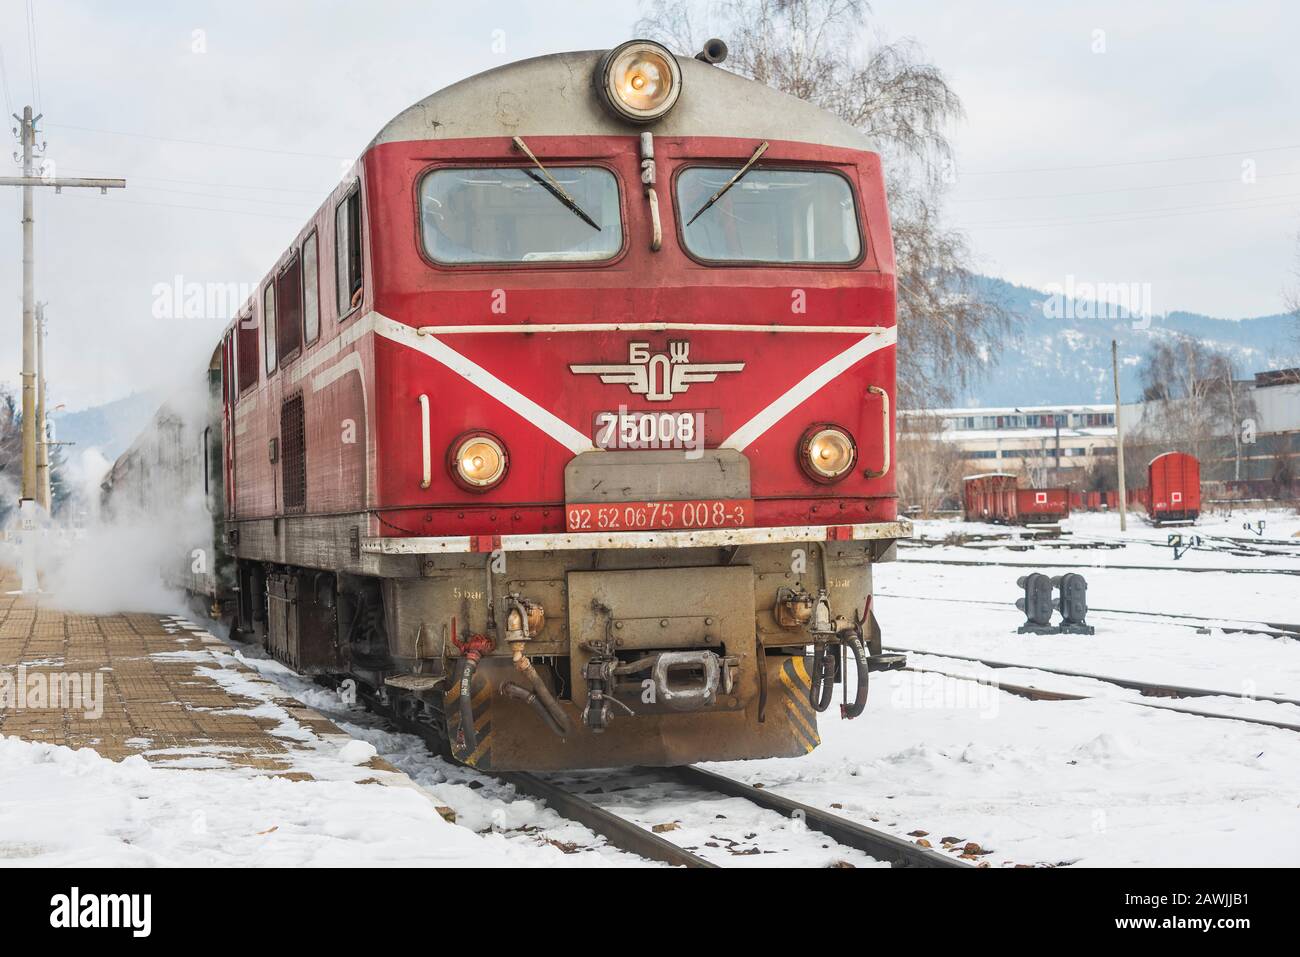 Stazione ferroviaria di Velingrad, Bulgaria - 8 febbraio 2020: Treno con locomotiva rossa e vagoni verdi arriva alla stazione ferroviaria. Foto Stock